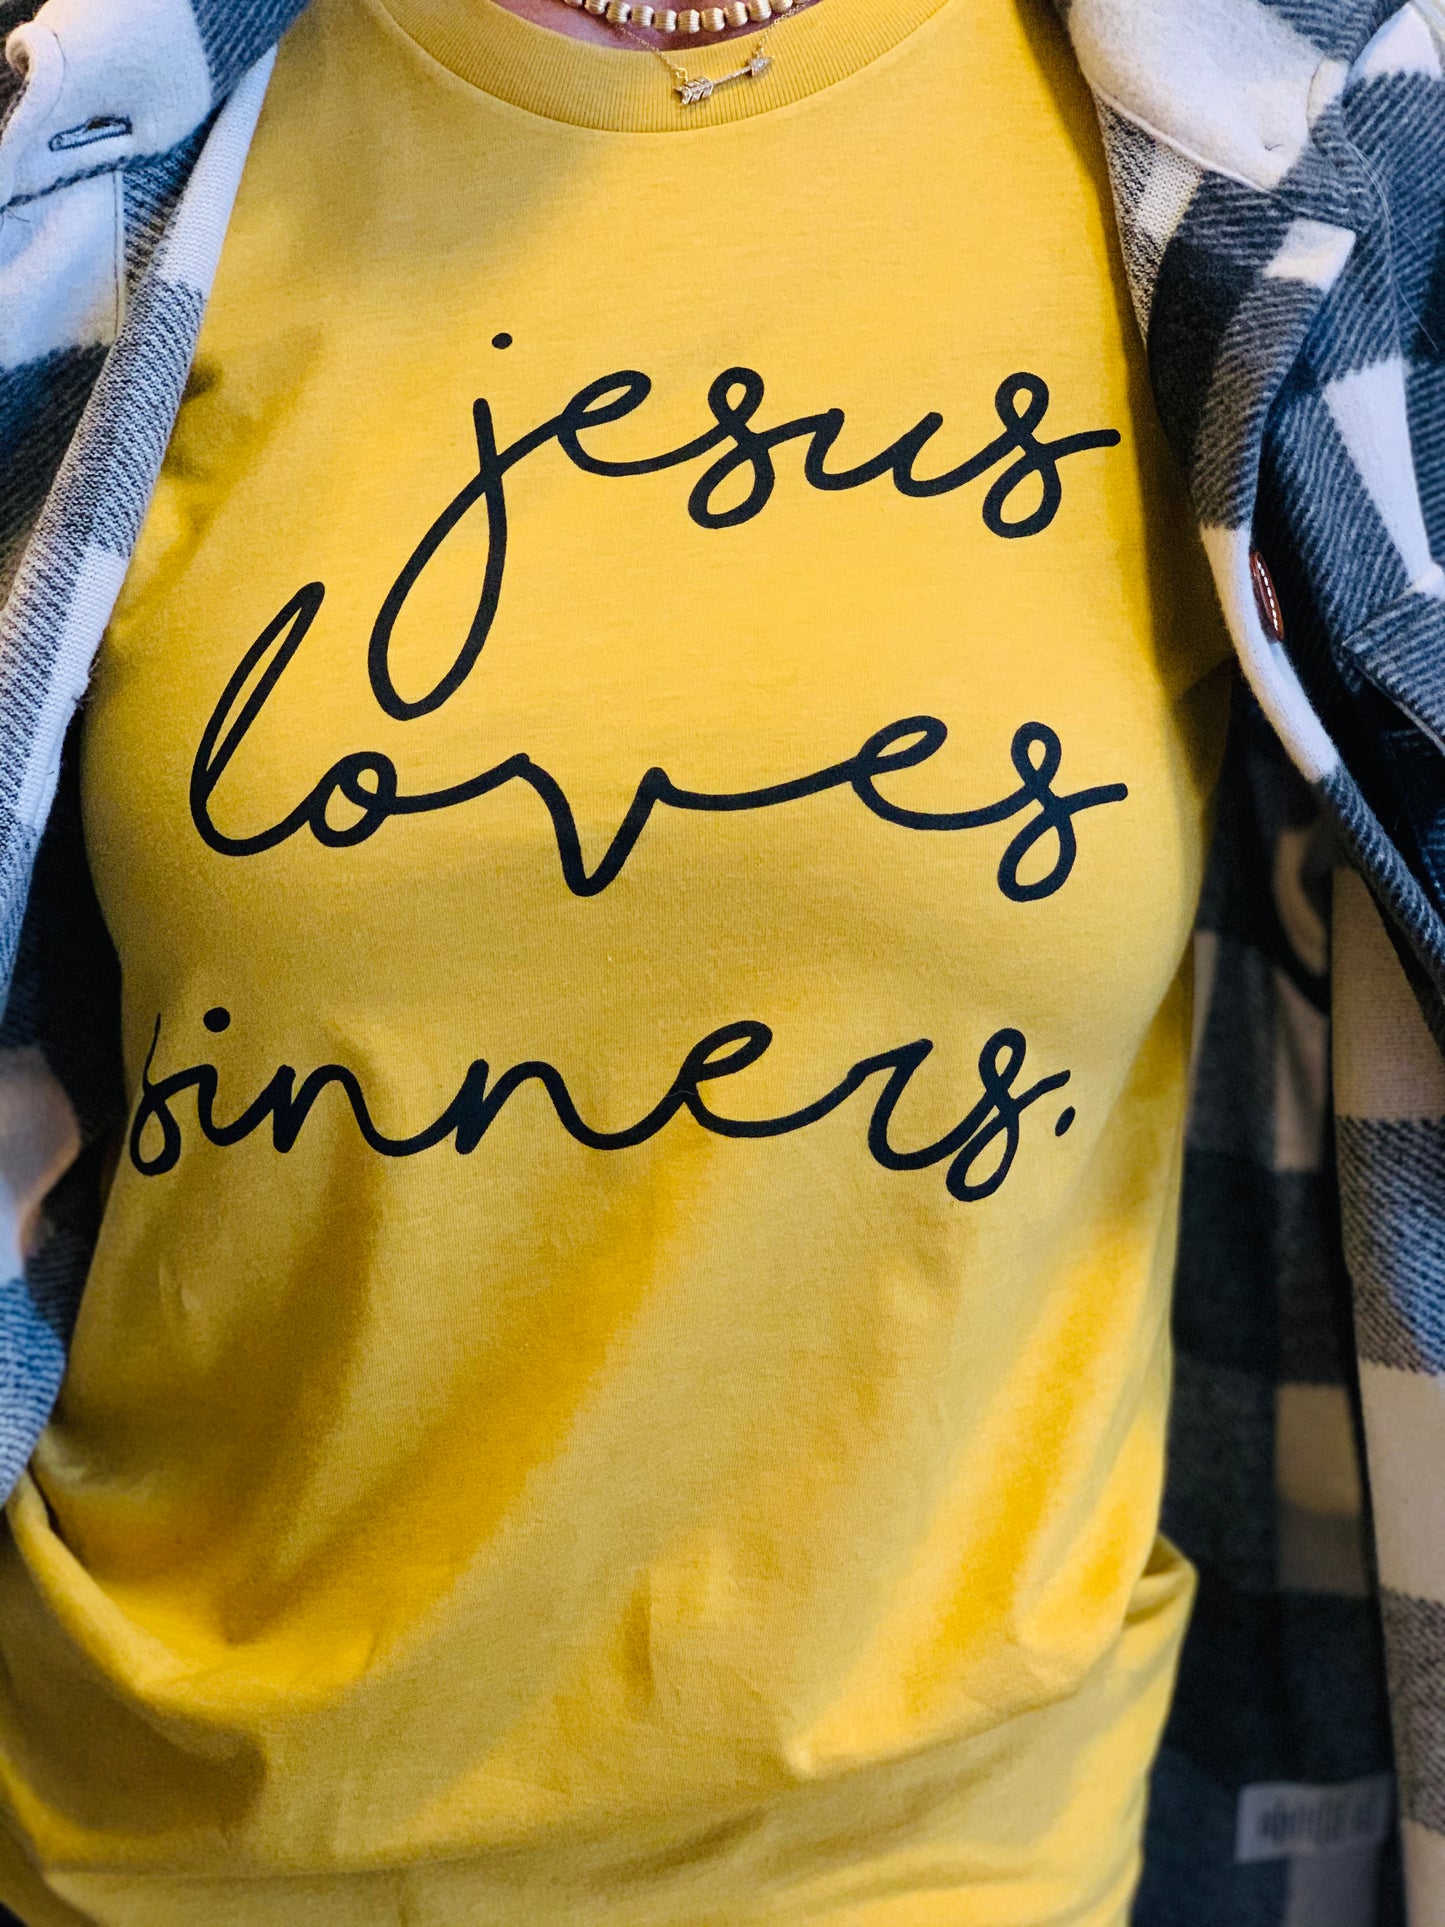 Jesus Loves Sinners